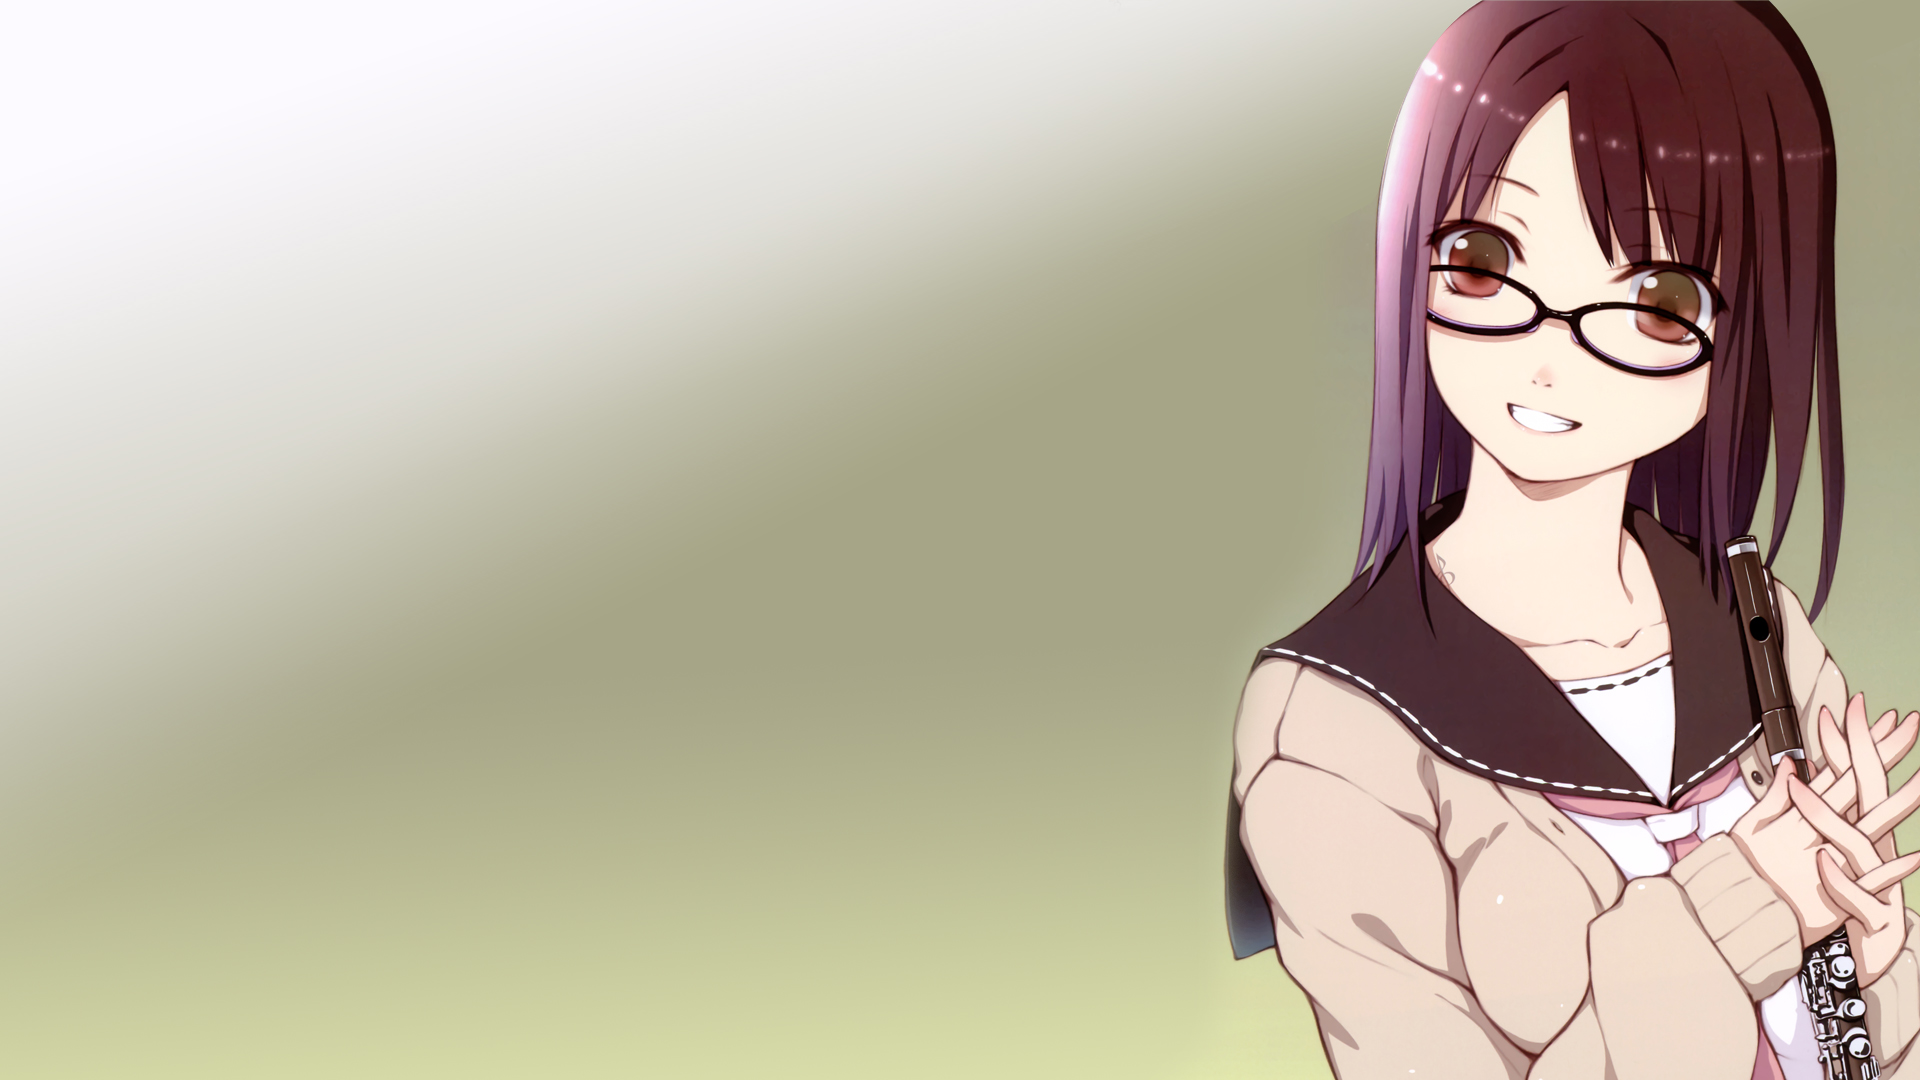 school uniforms, schoolgirls, tie, glasses, meganekko, anime girls - desktop wallpaper